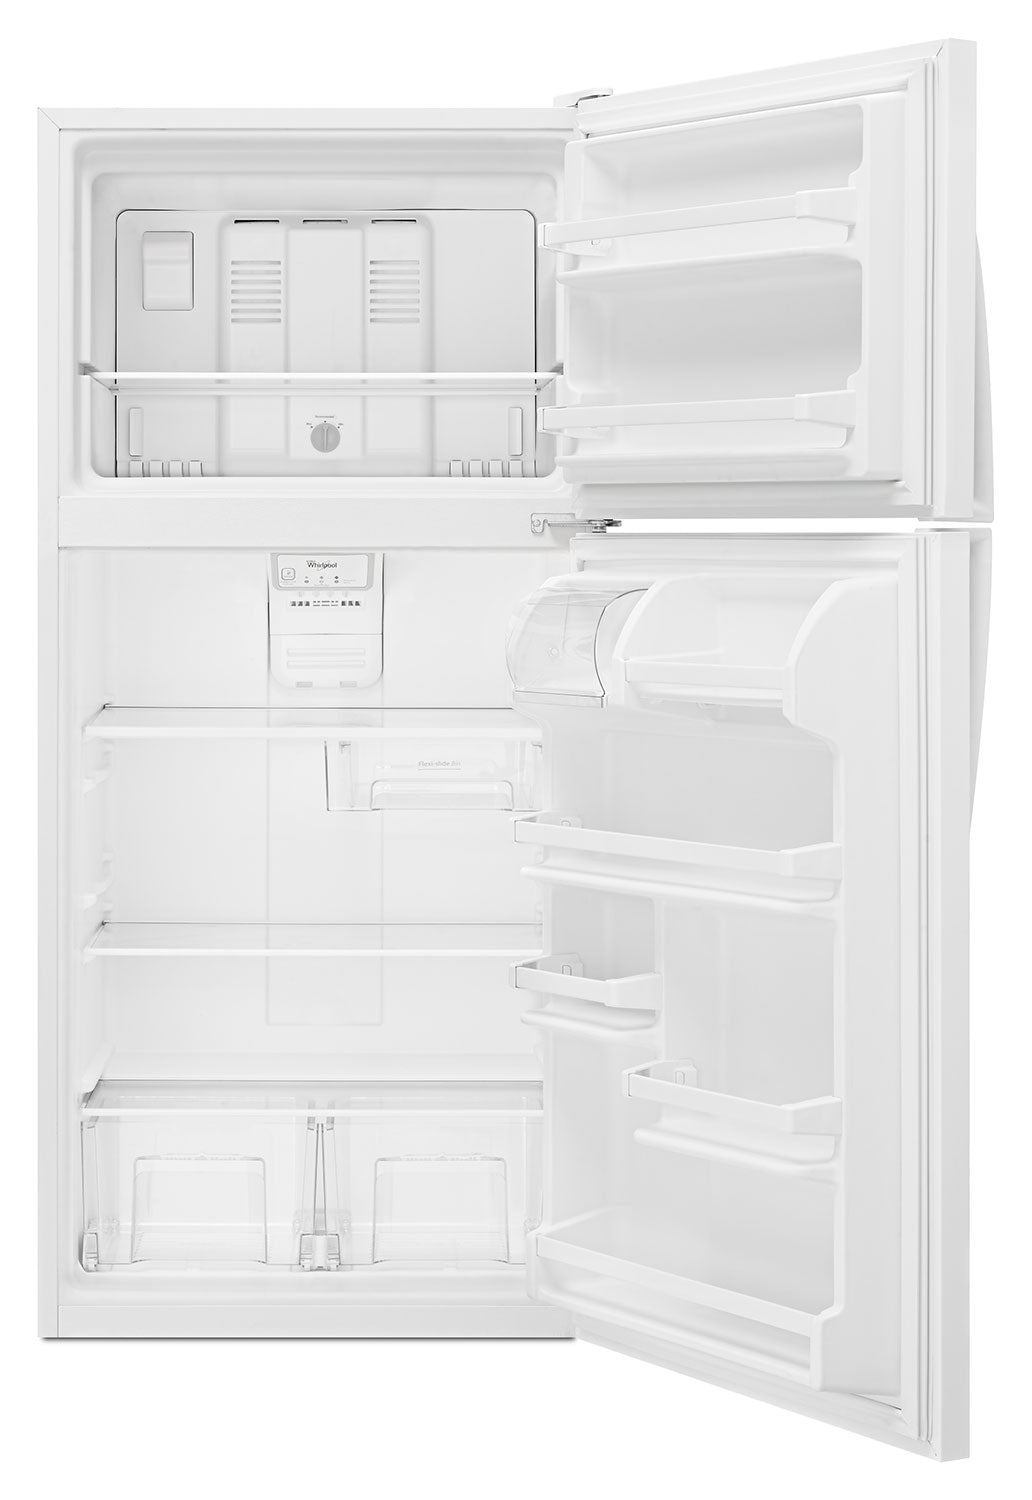 Whirlpool White Top-Freezer Refrigerator (18.2 Cu. Ft.) WRT318FZDW